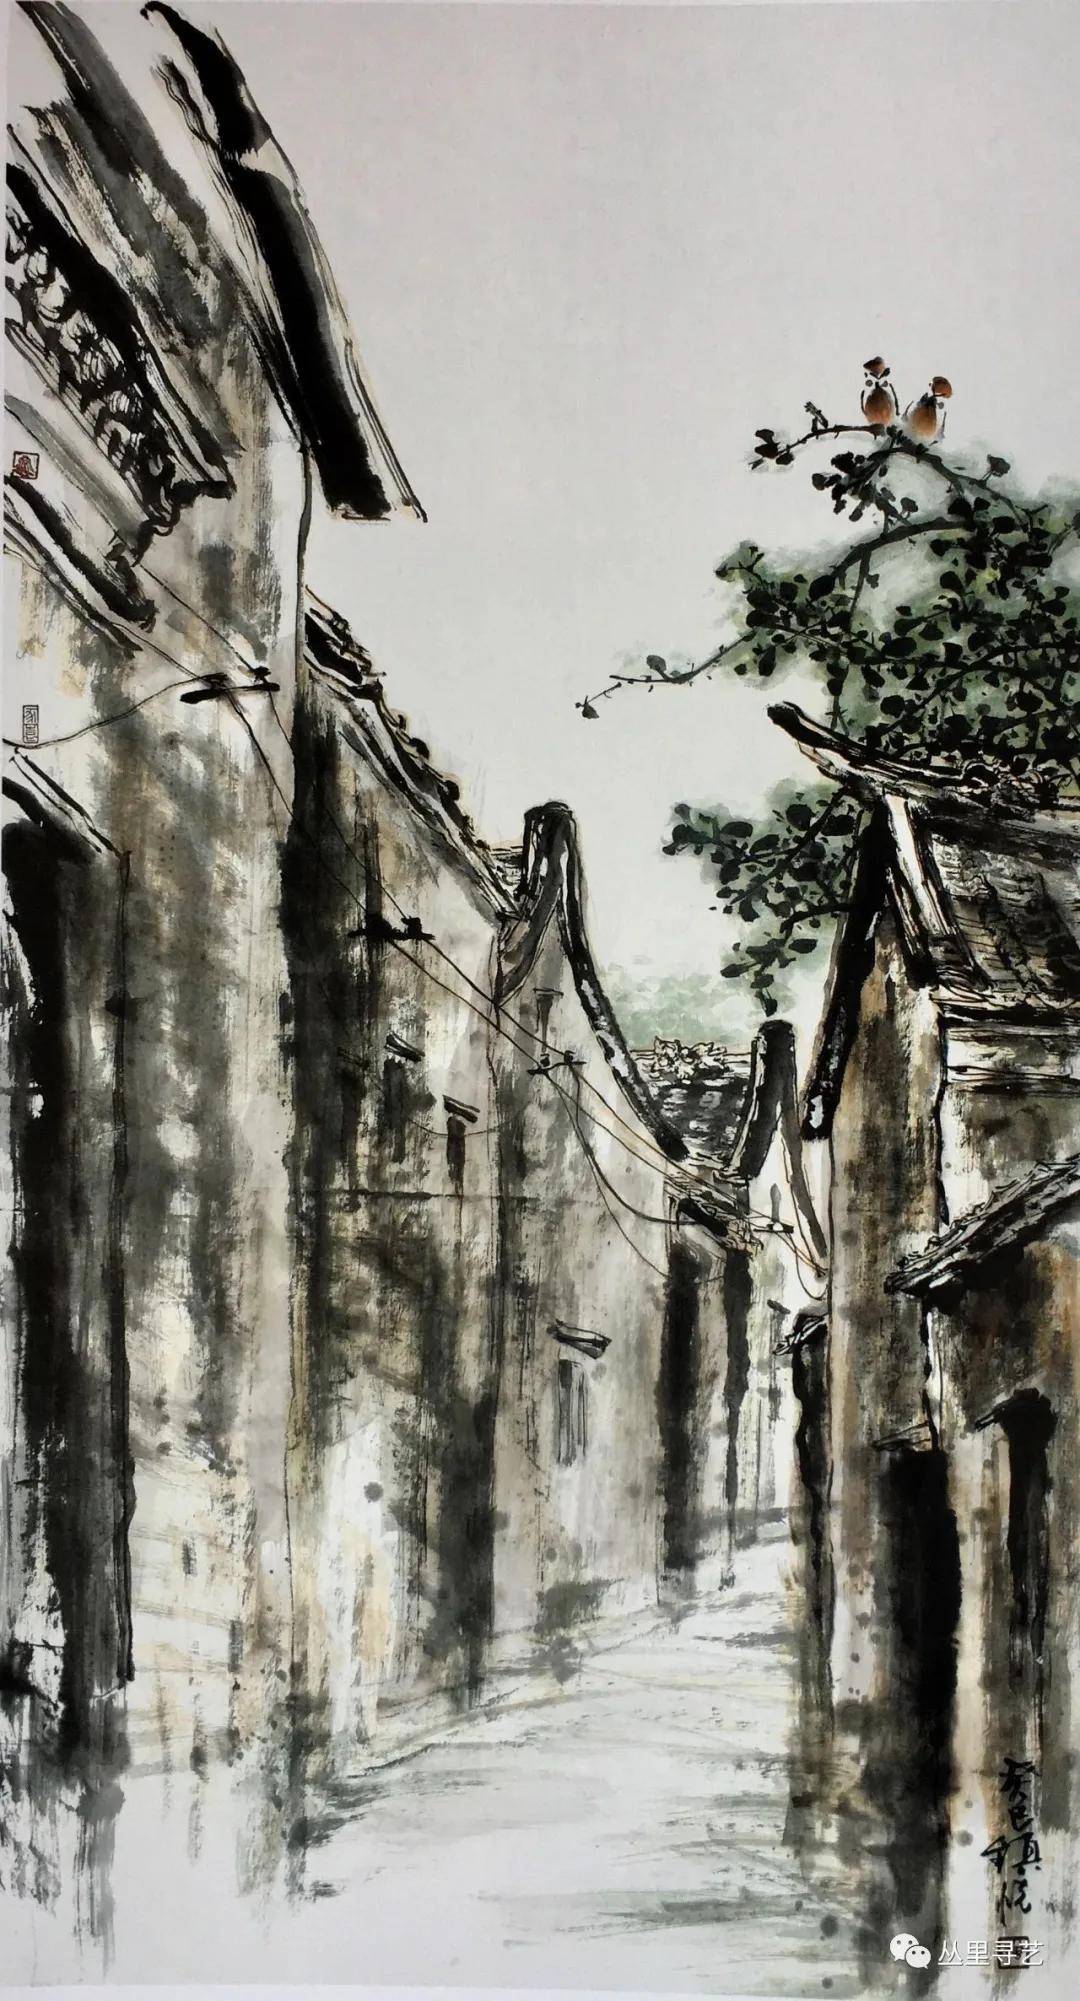 曾镇悦,广东澄海人,为当地颇具盛名之民间艺术家,对潮汕民俗古建筑